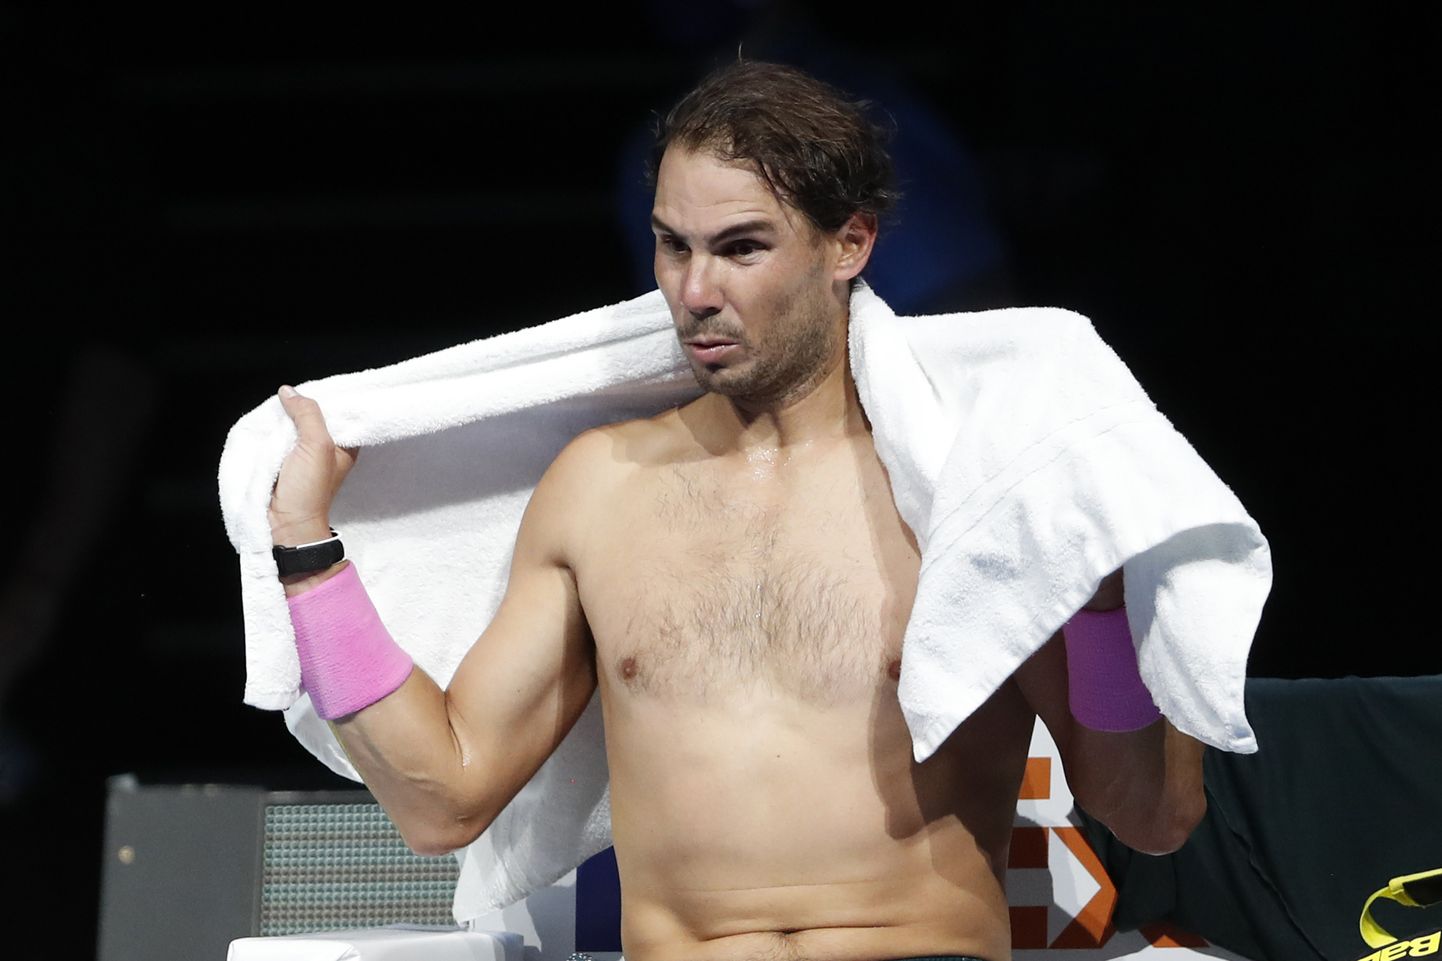 Rafael Nadal avaldas avameelses intervjuus, et talle meeldib pidutseda ja lemmik alkoholijook on tekiila. Foto pärineb aga novembri lõpus toimunud ATP finaalvõistluse poolfinaalist.